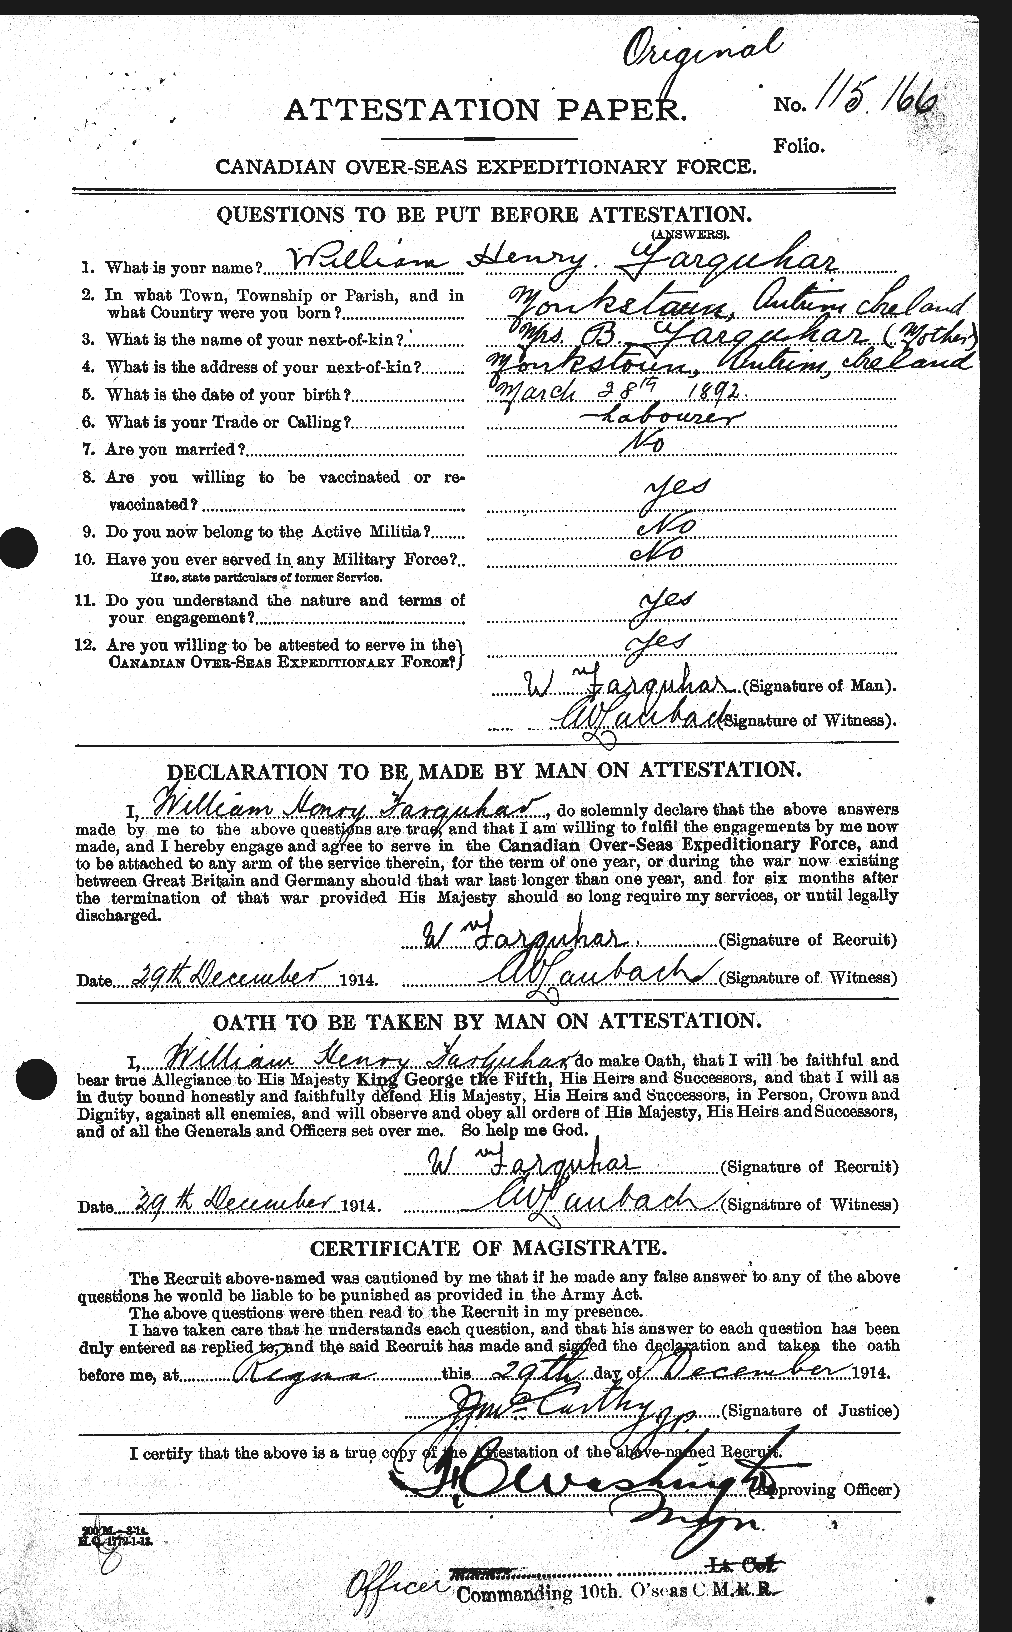 Dossiers du Personnel de la Première Guerre mondiale - CEC 319285a